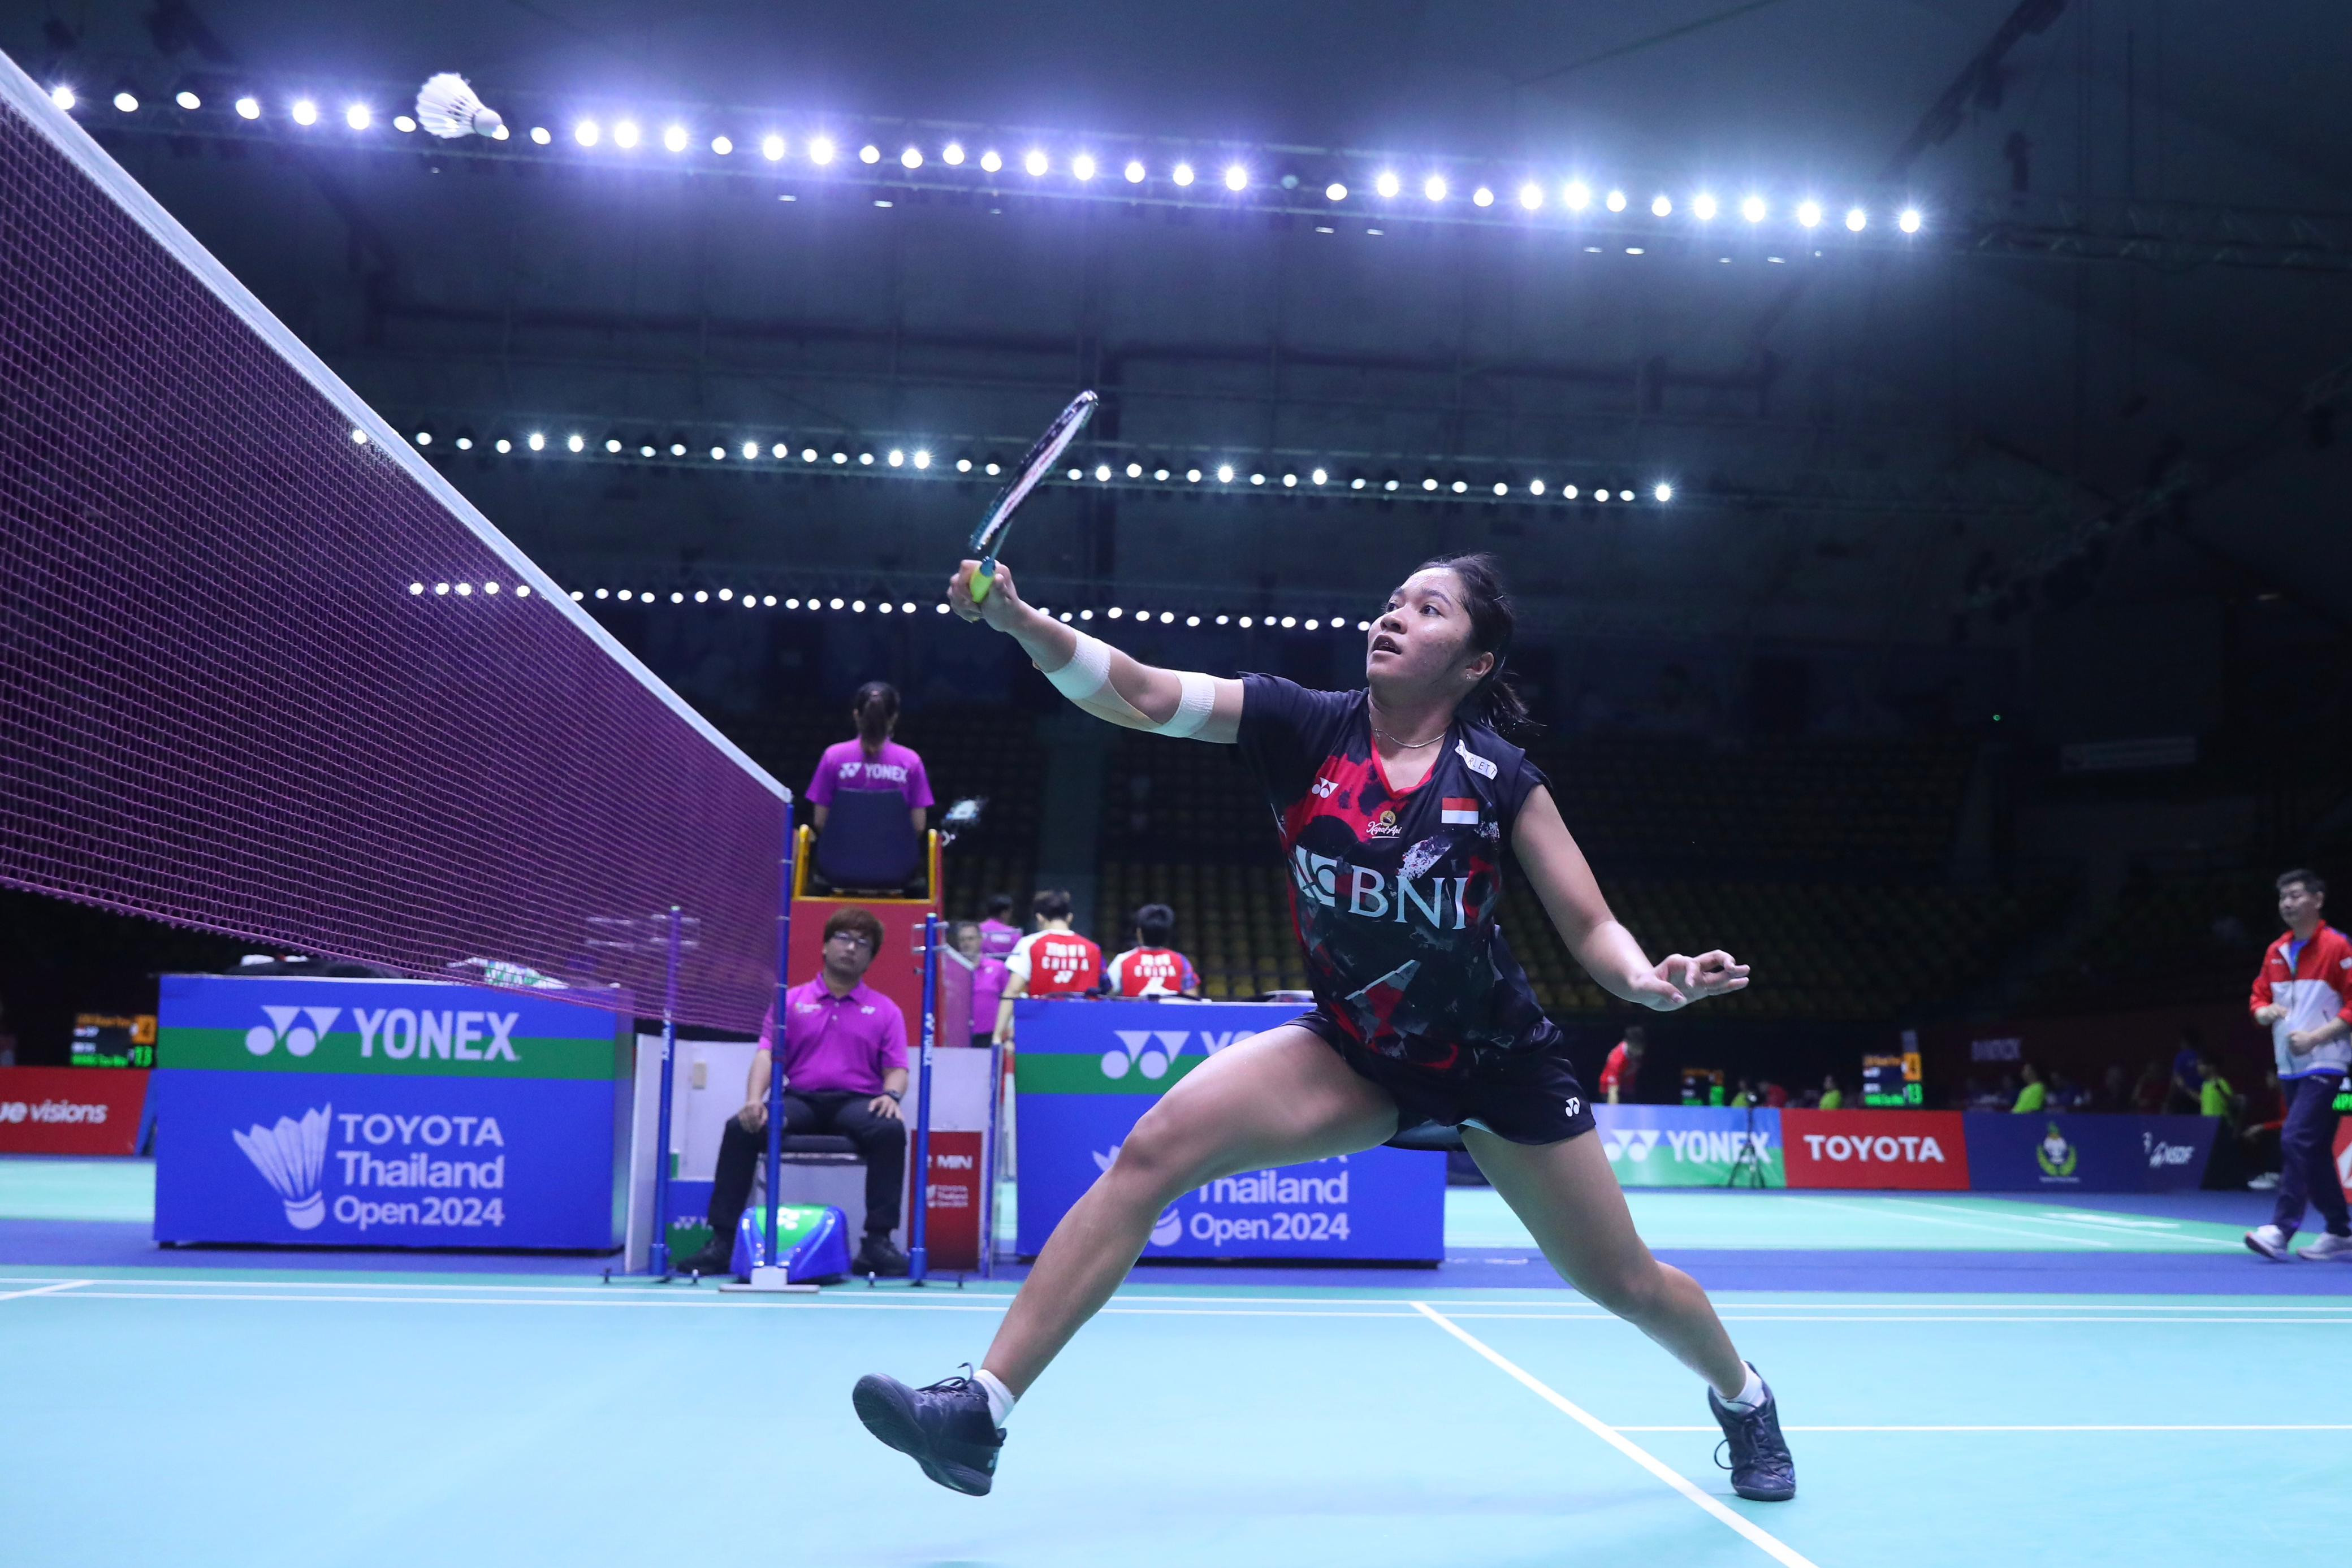 Masih Pemulihan Cedera, Ester Angkat Koper di Babak Awal Thailand Open 2024 - JPNN.com